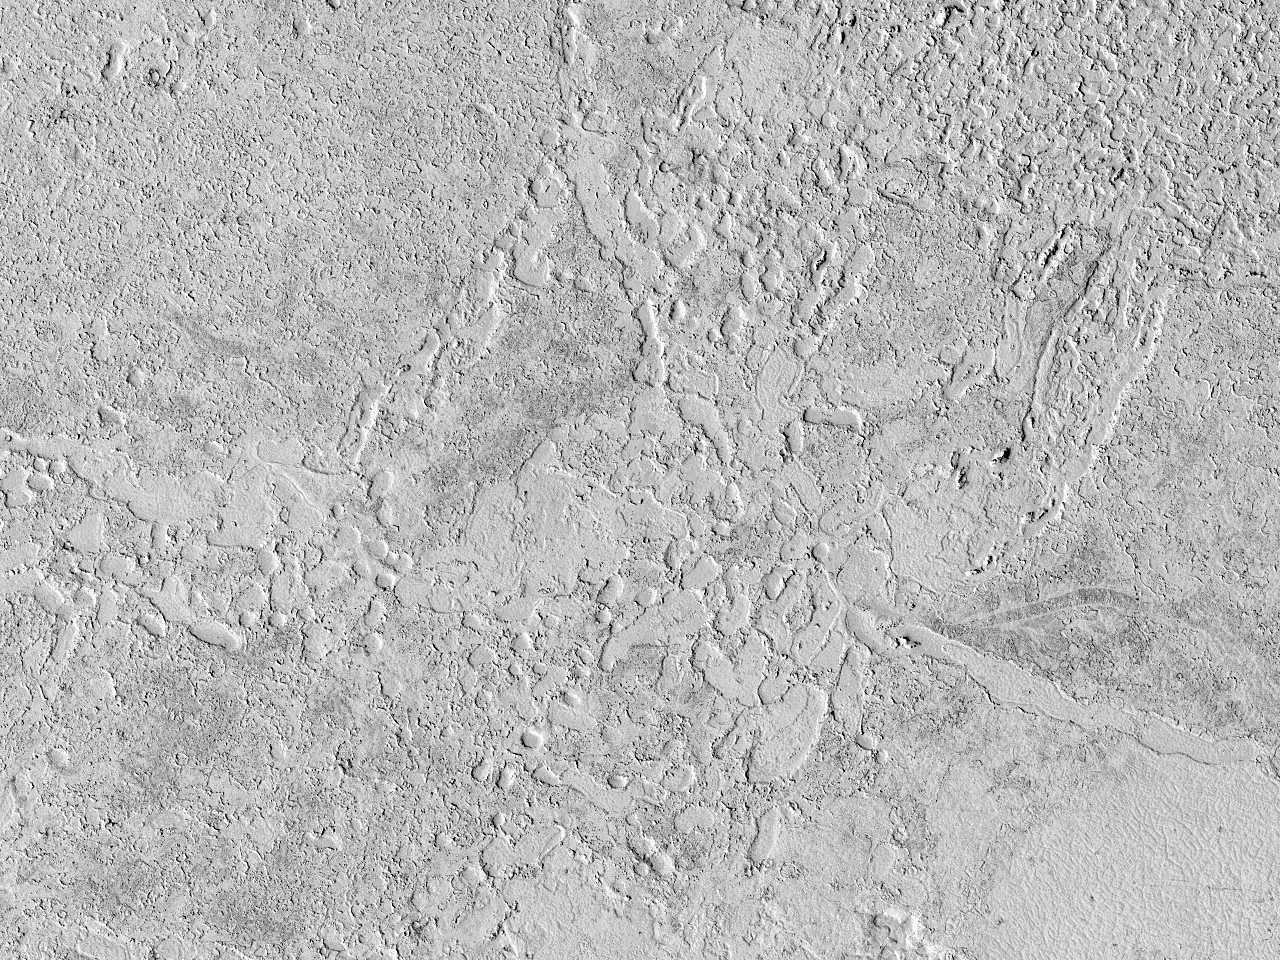 Senyals de colades antigues de lava a Elysium Planitia